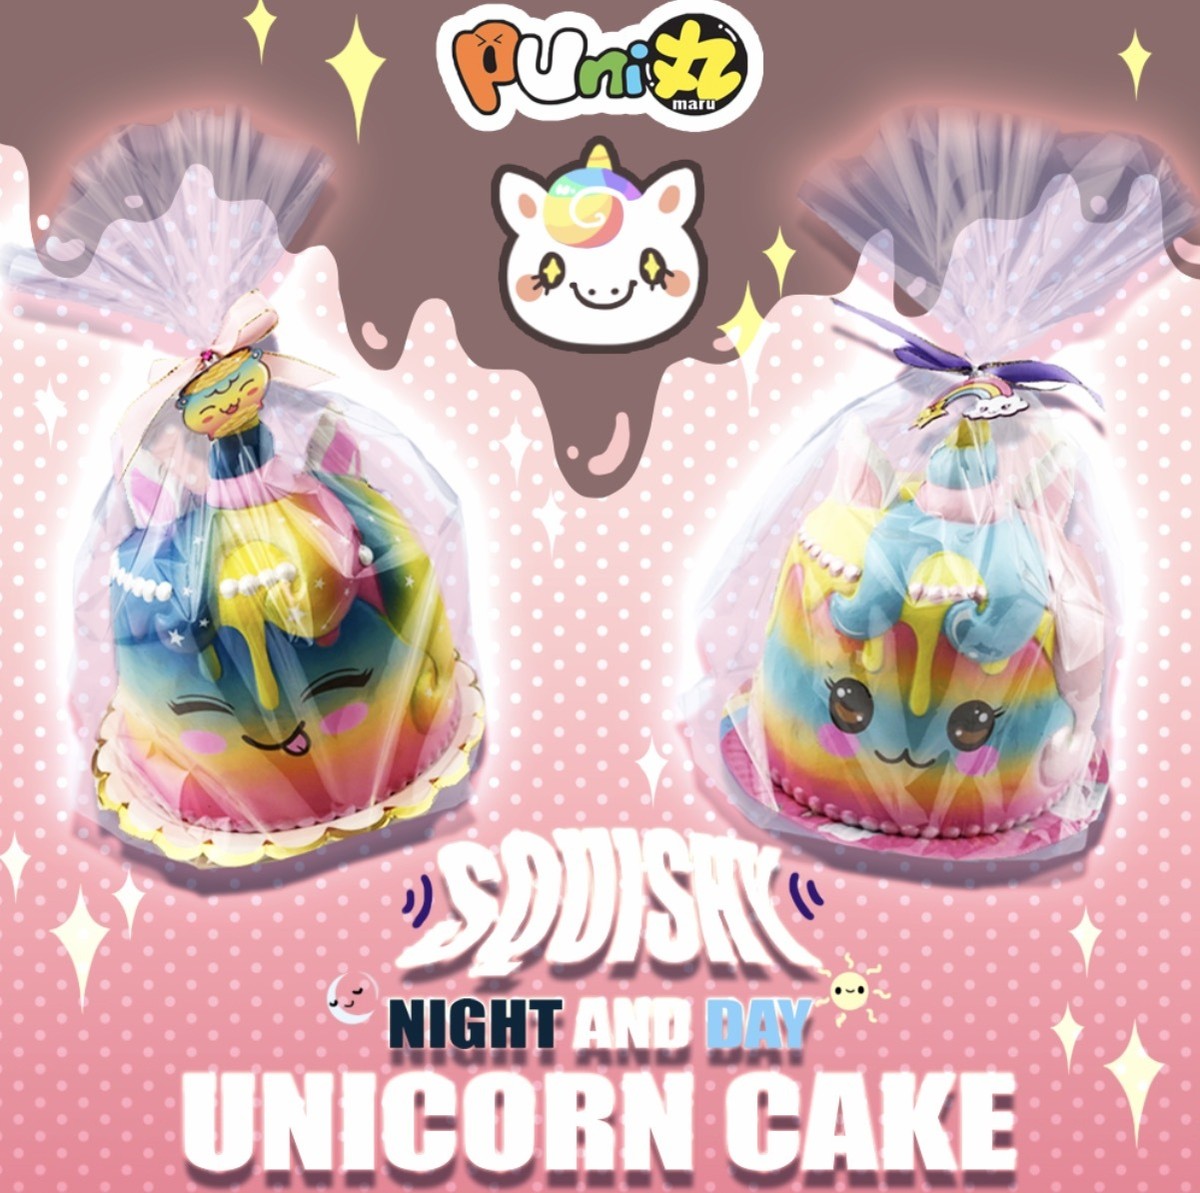 ぷに丸 Puni Maru Super Jumbo Rainbow Unicorn Cake ジャンボユニコーンケーキ スクイーズショップ クレア